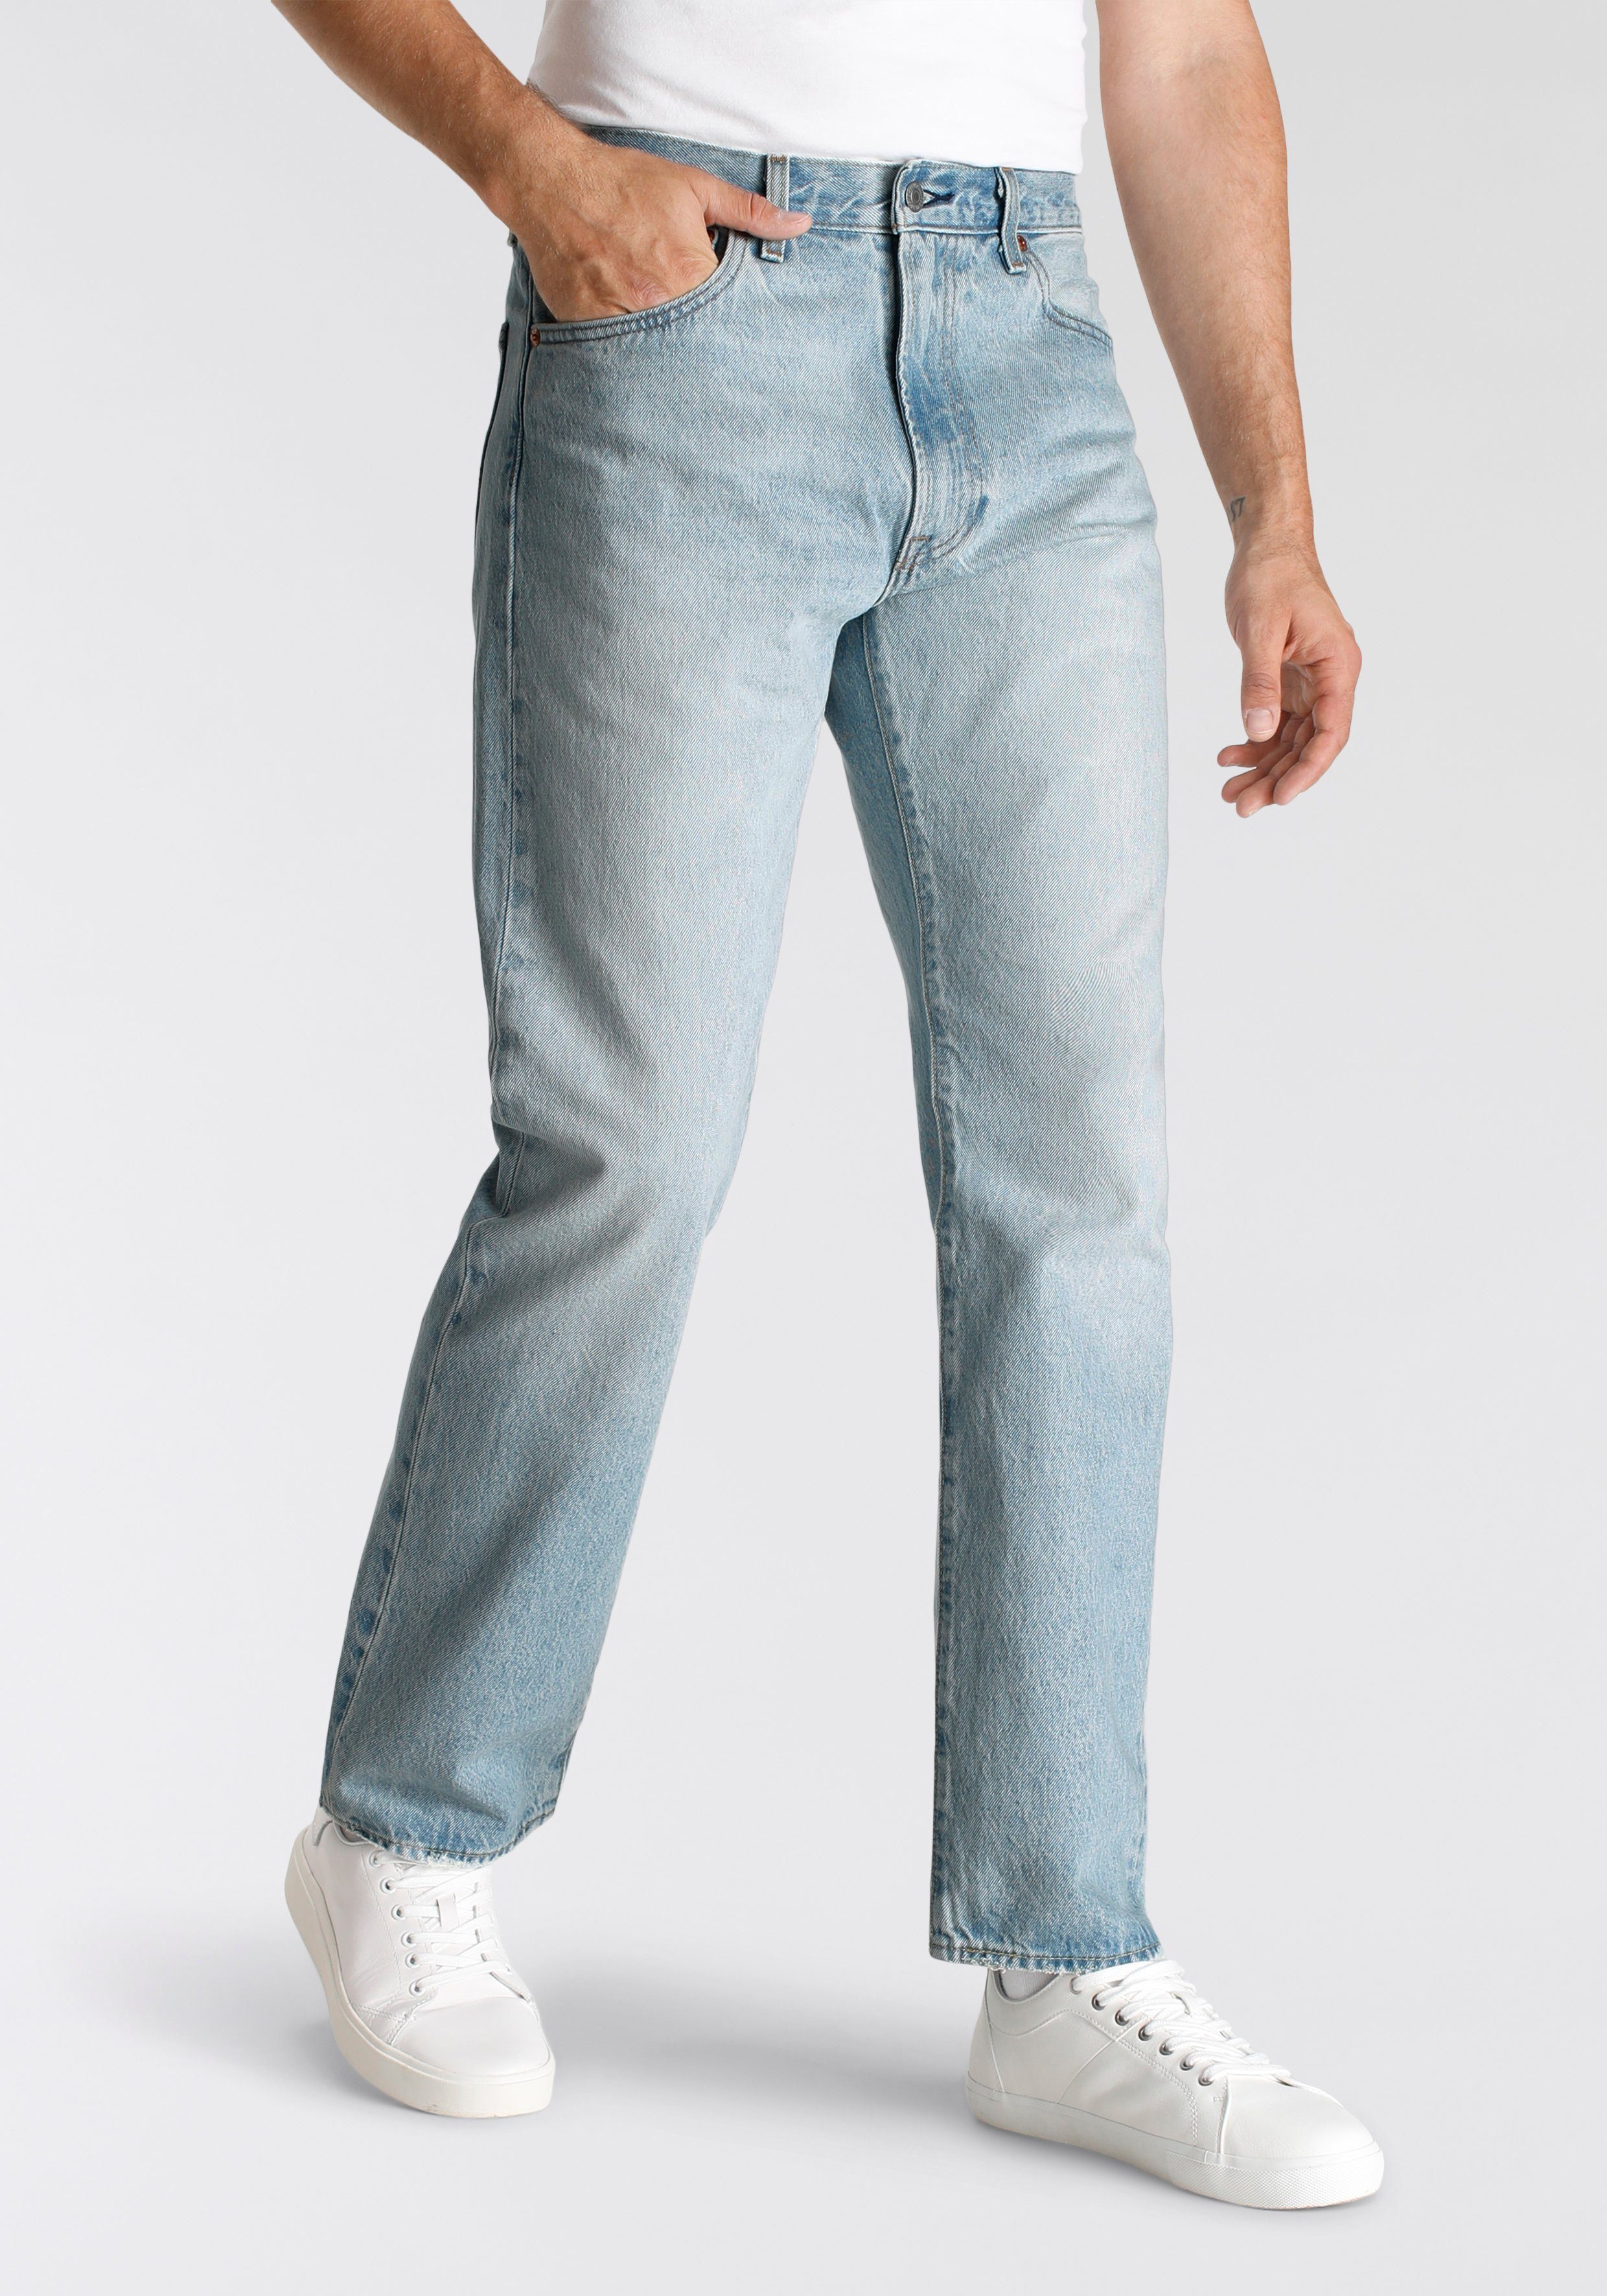 Levi's® Straight-Jeans 551Z AUTHENTIC Lederbadge me just squeez mit